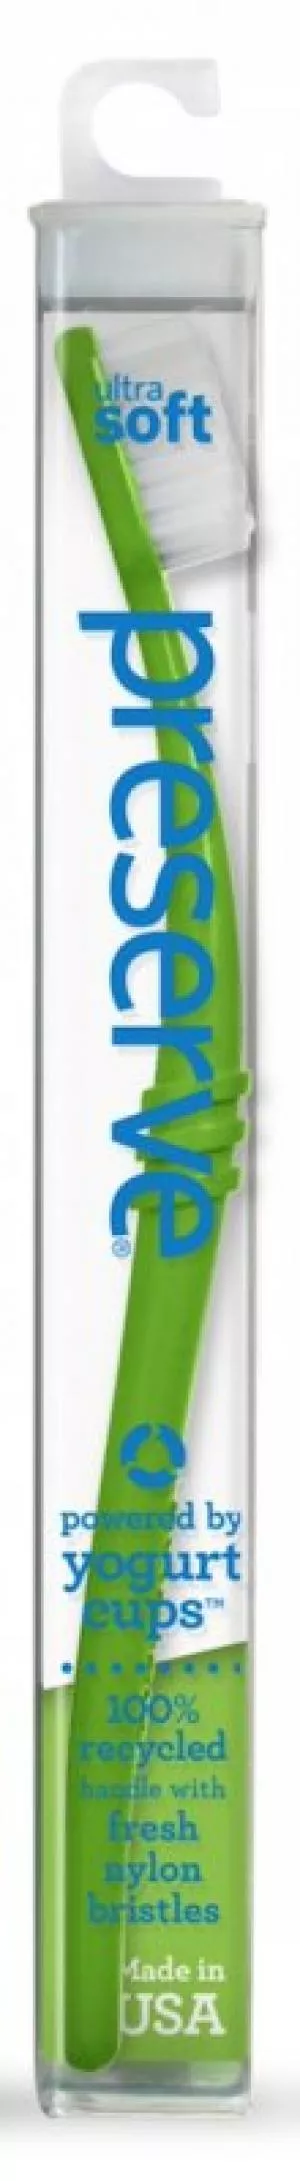 Preserve Cepillo de dientes (suave) - verde - hecho de vasos de yogur reciclados